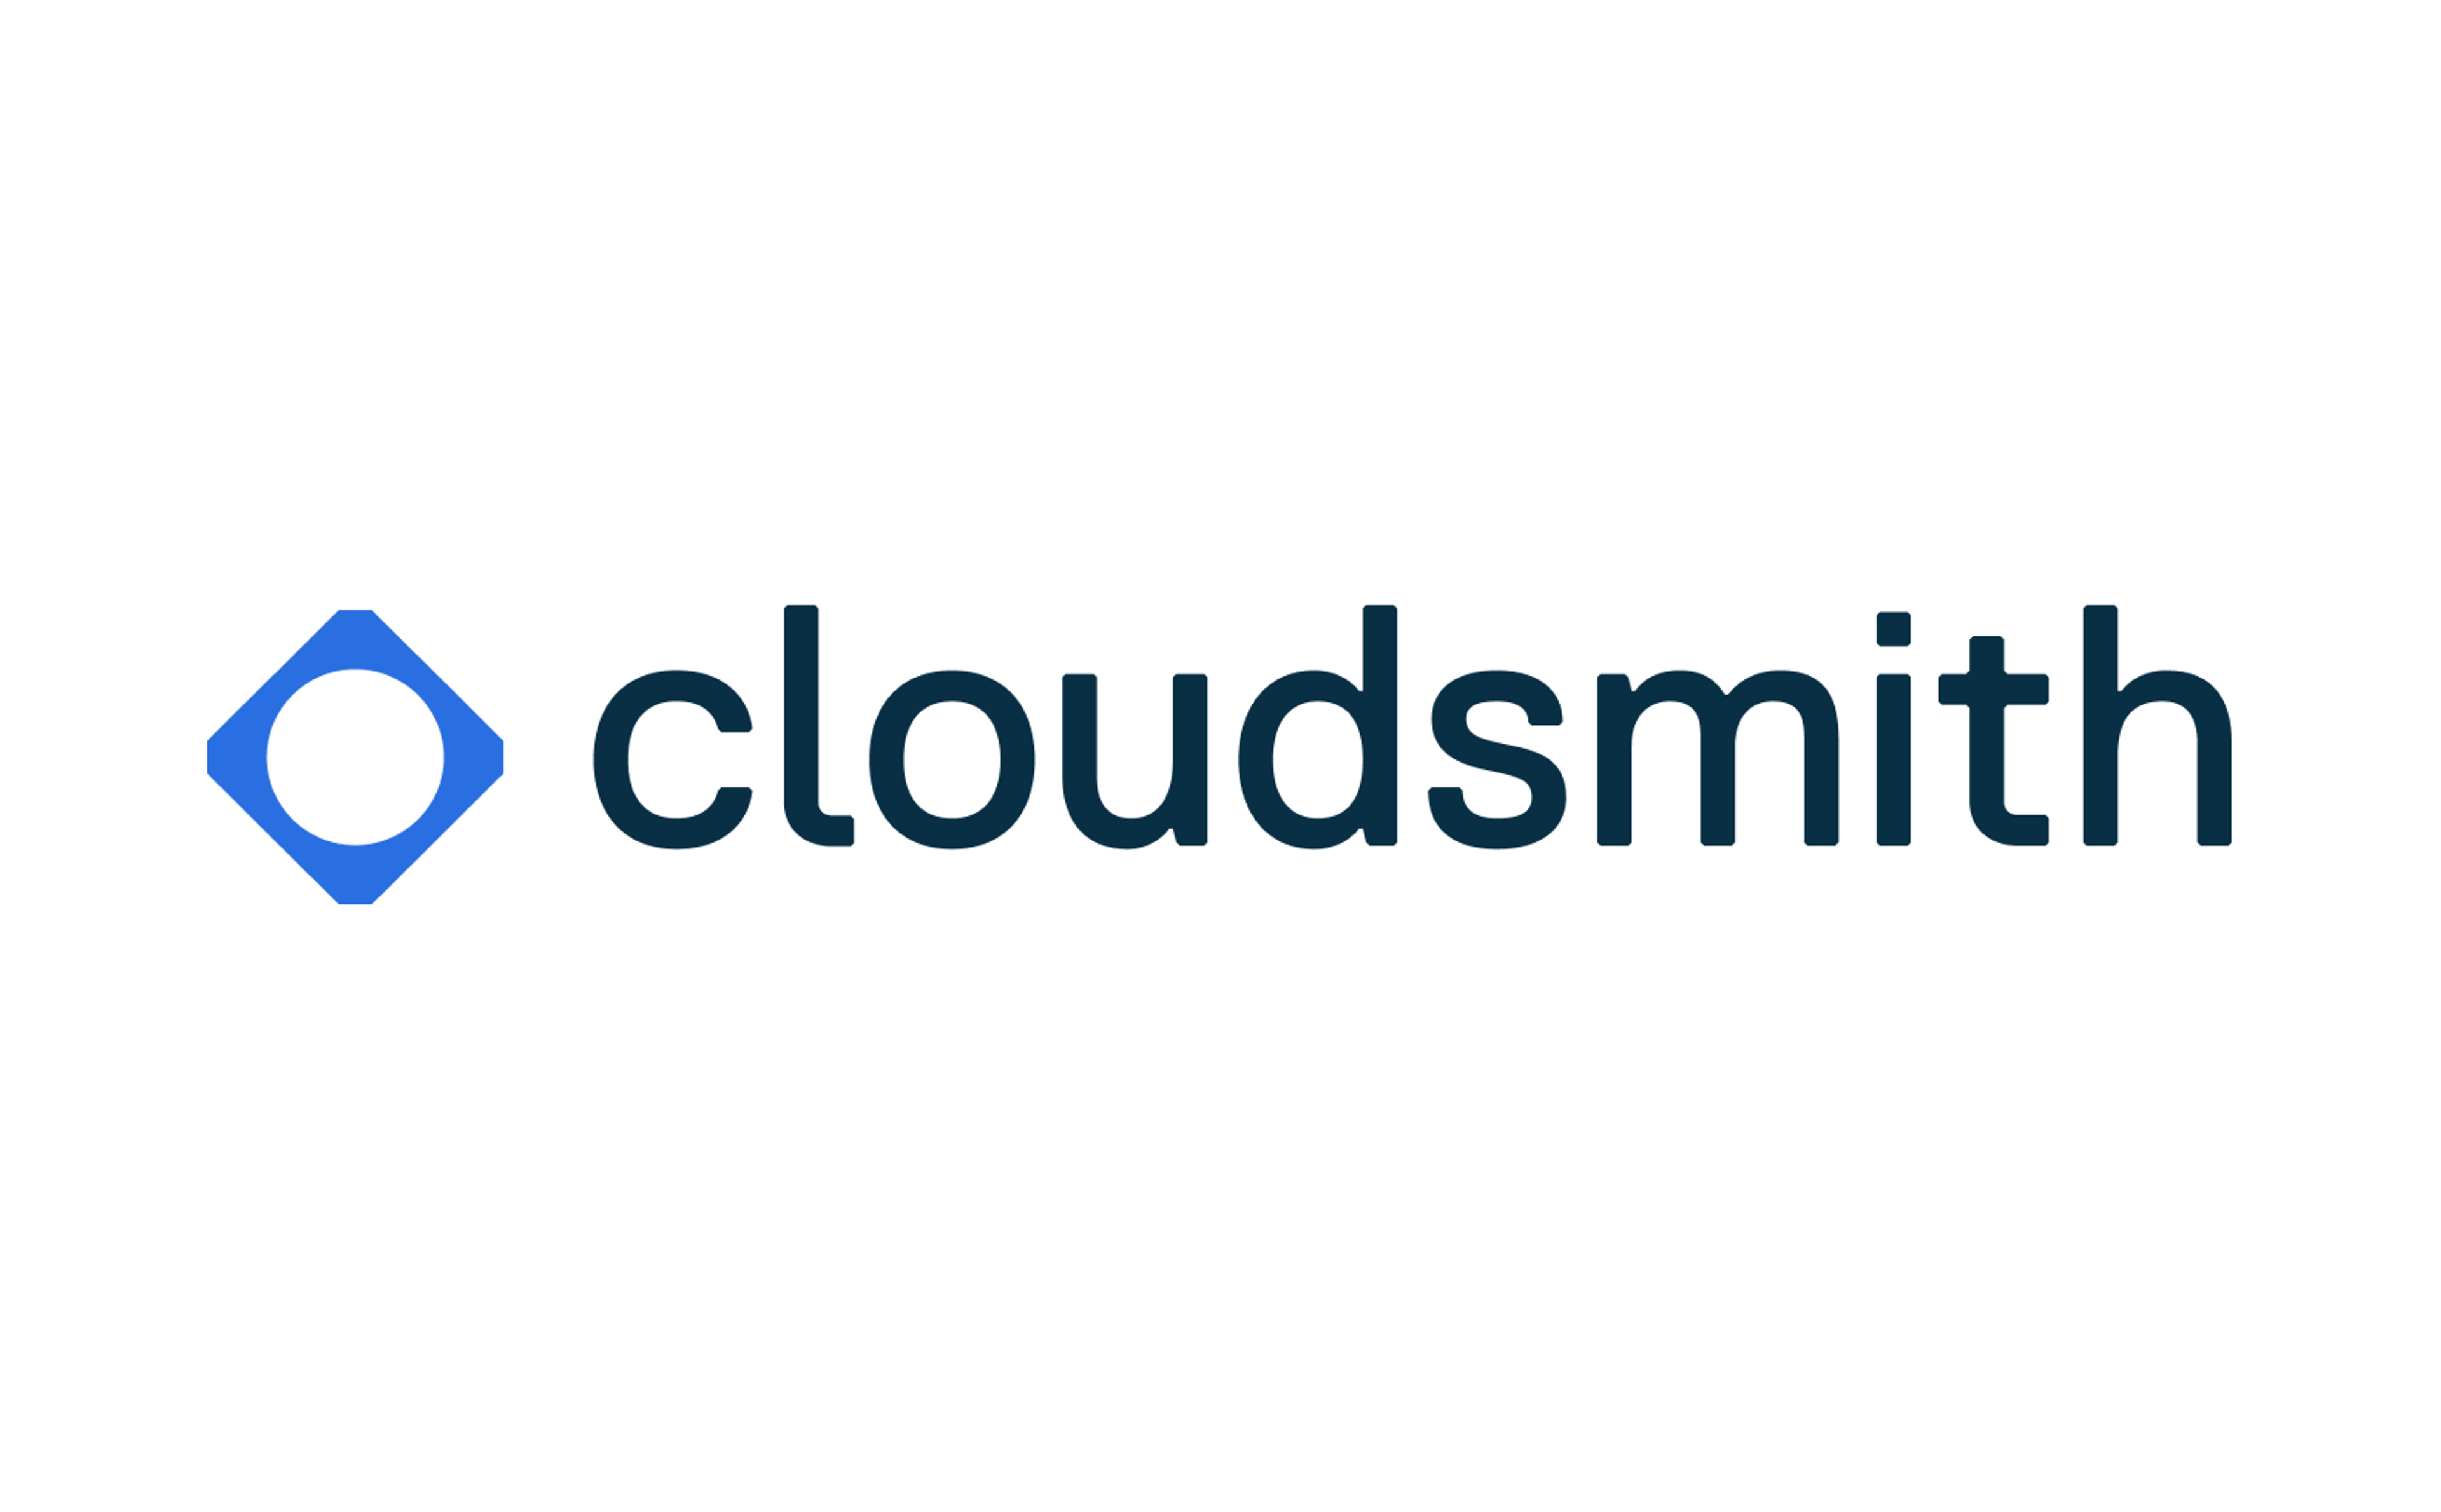 Cloudsmith logo